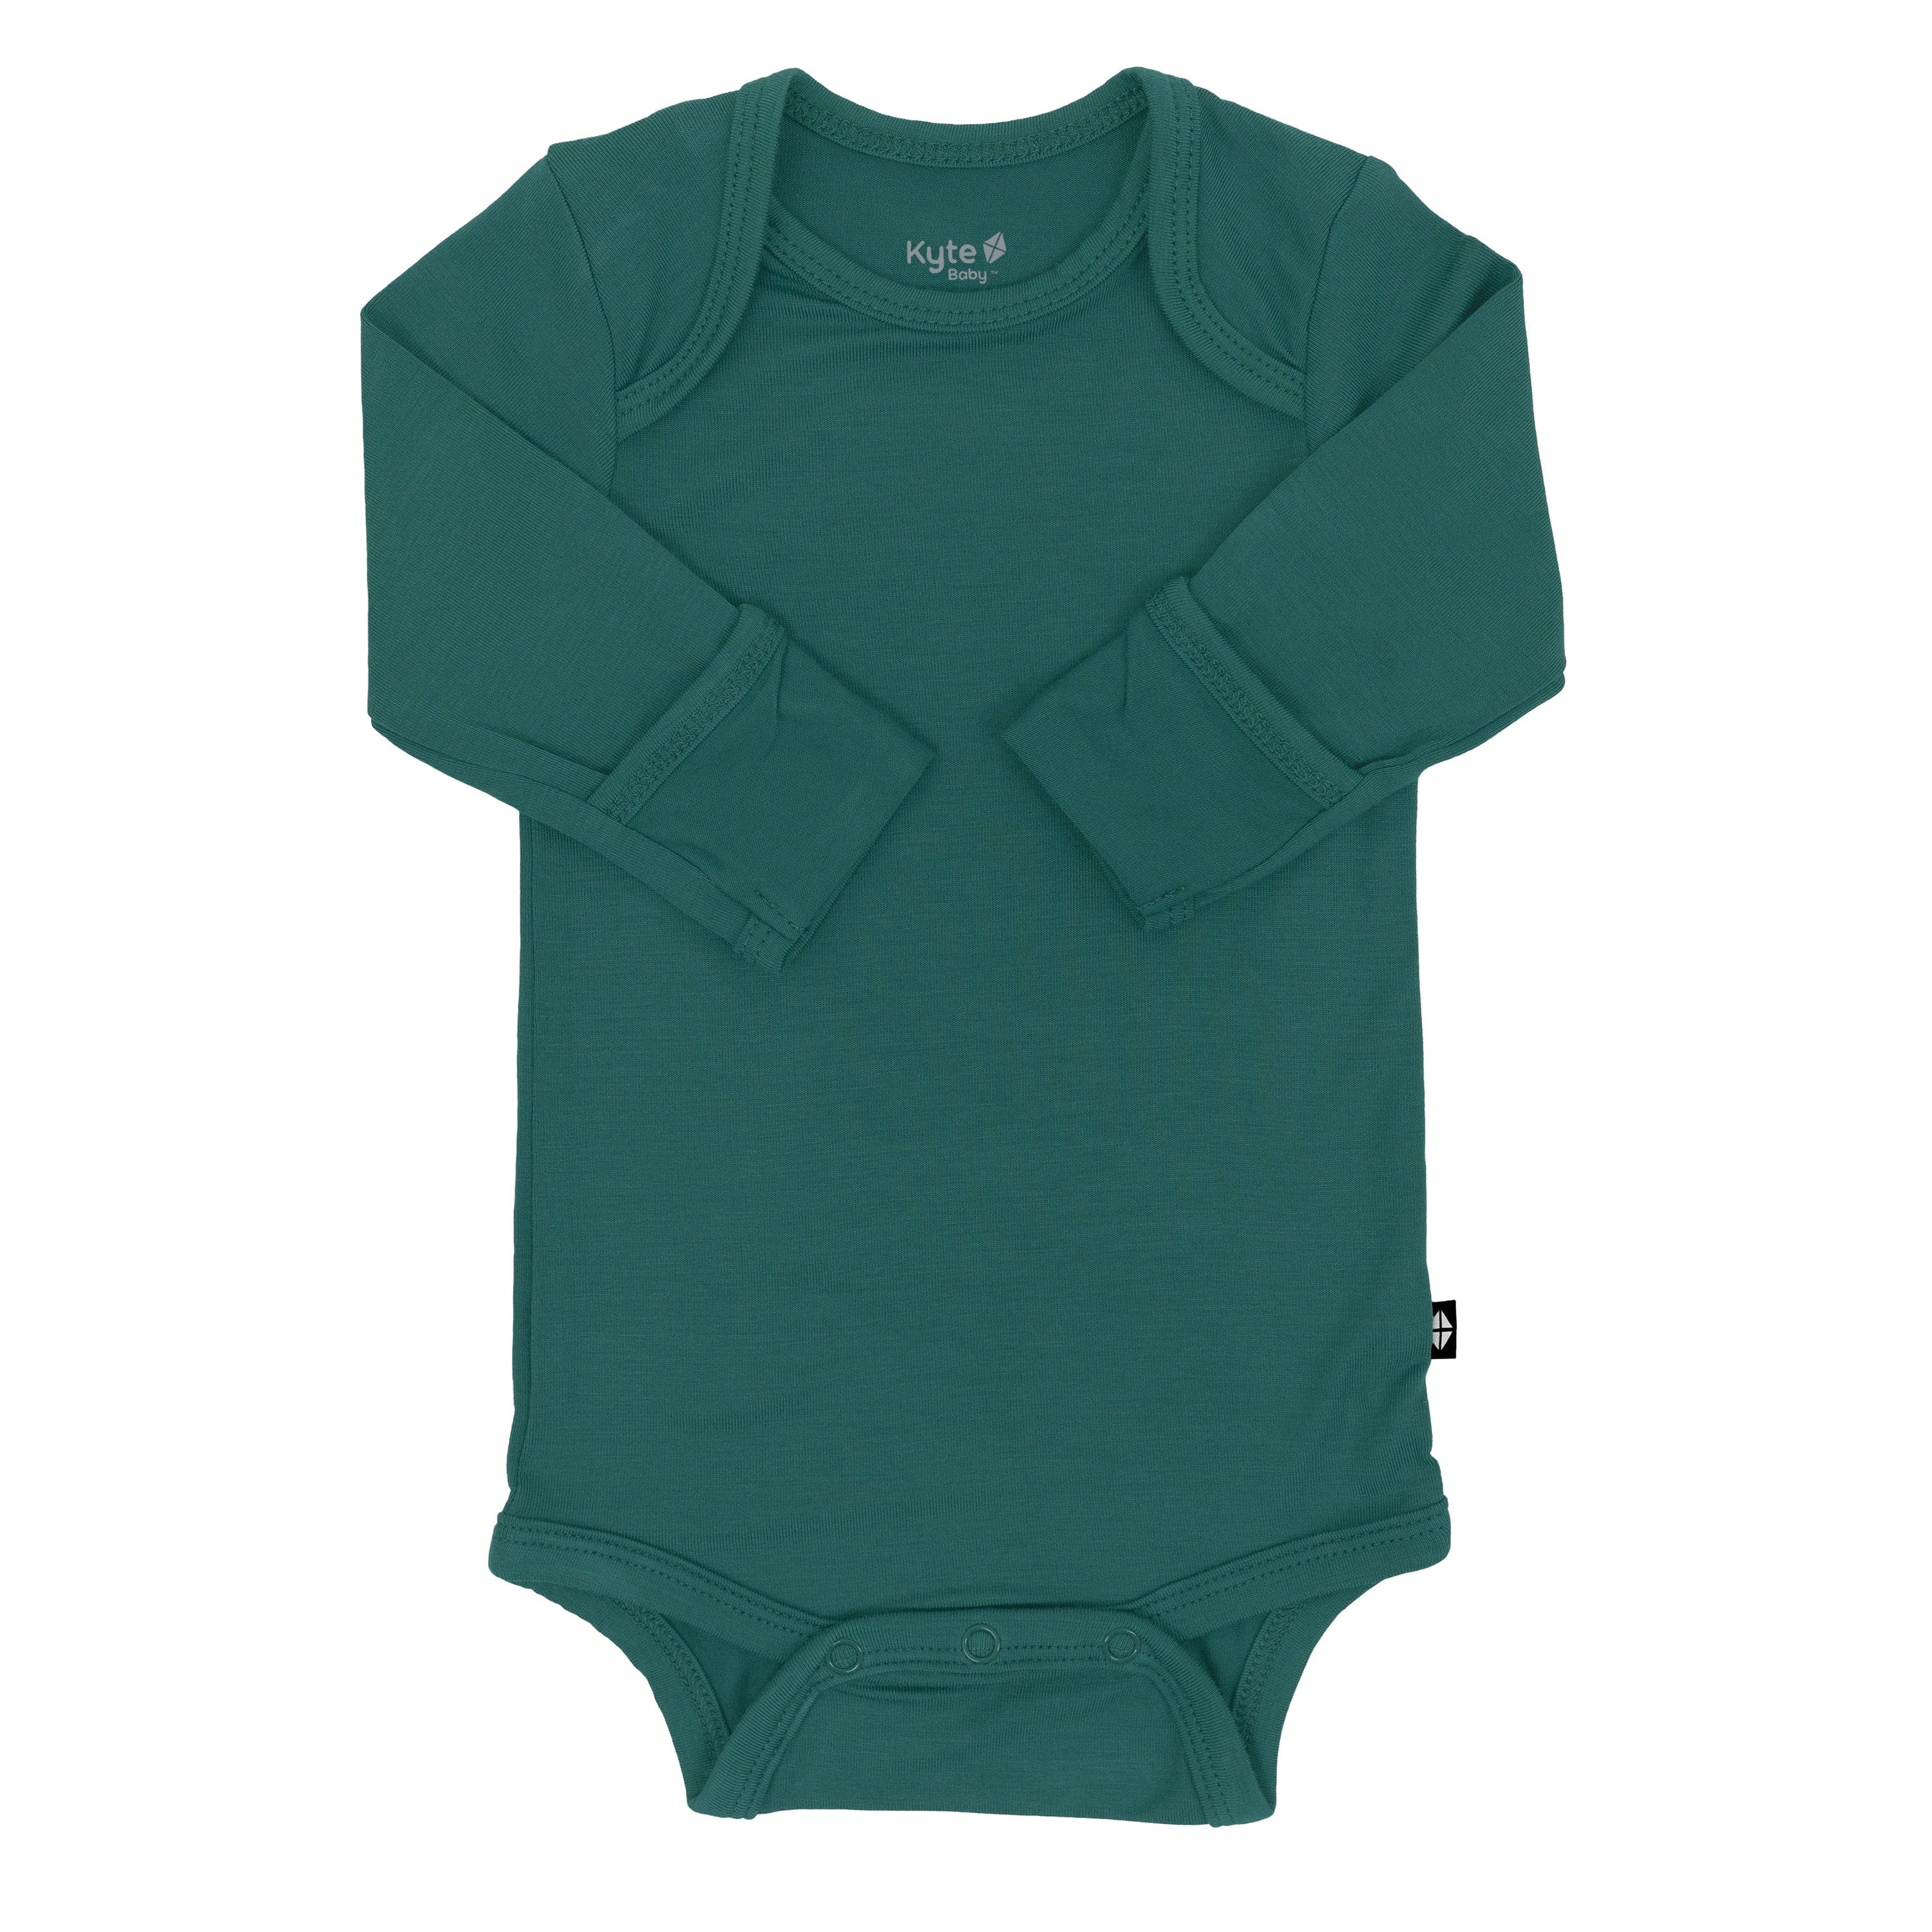 Kyte Baby Layette Long Sleeve Bodysuit in Emerald